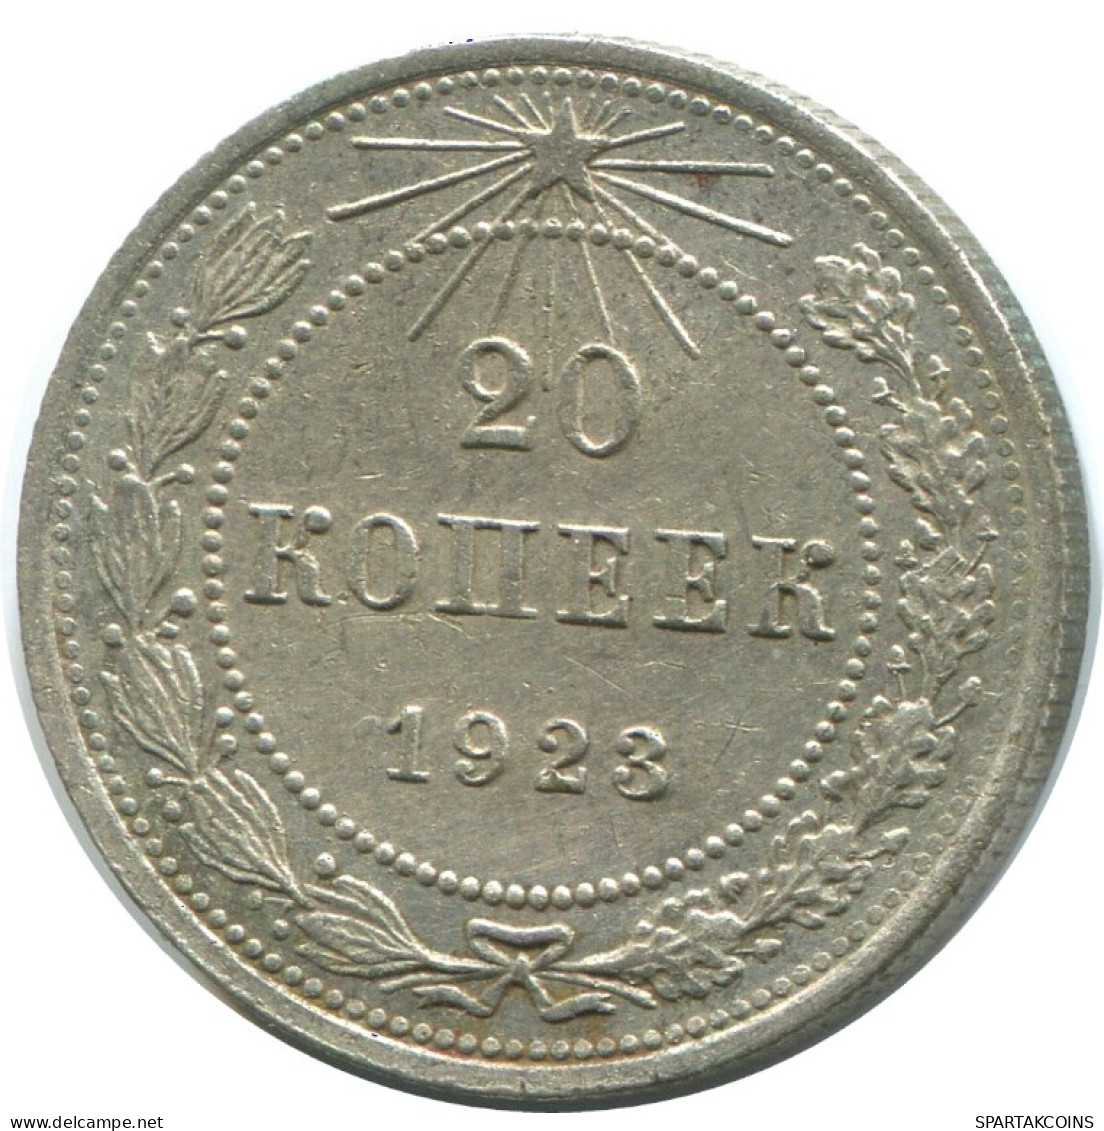 20 KOPEKS 1923 RUSSIA RSFSR SILVER Coin HIGH GRADE #AF474.4.U.A - Russland